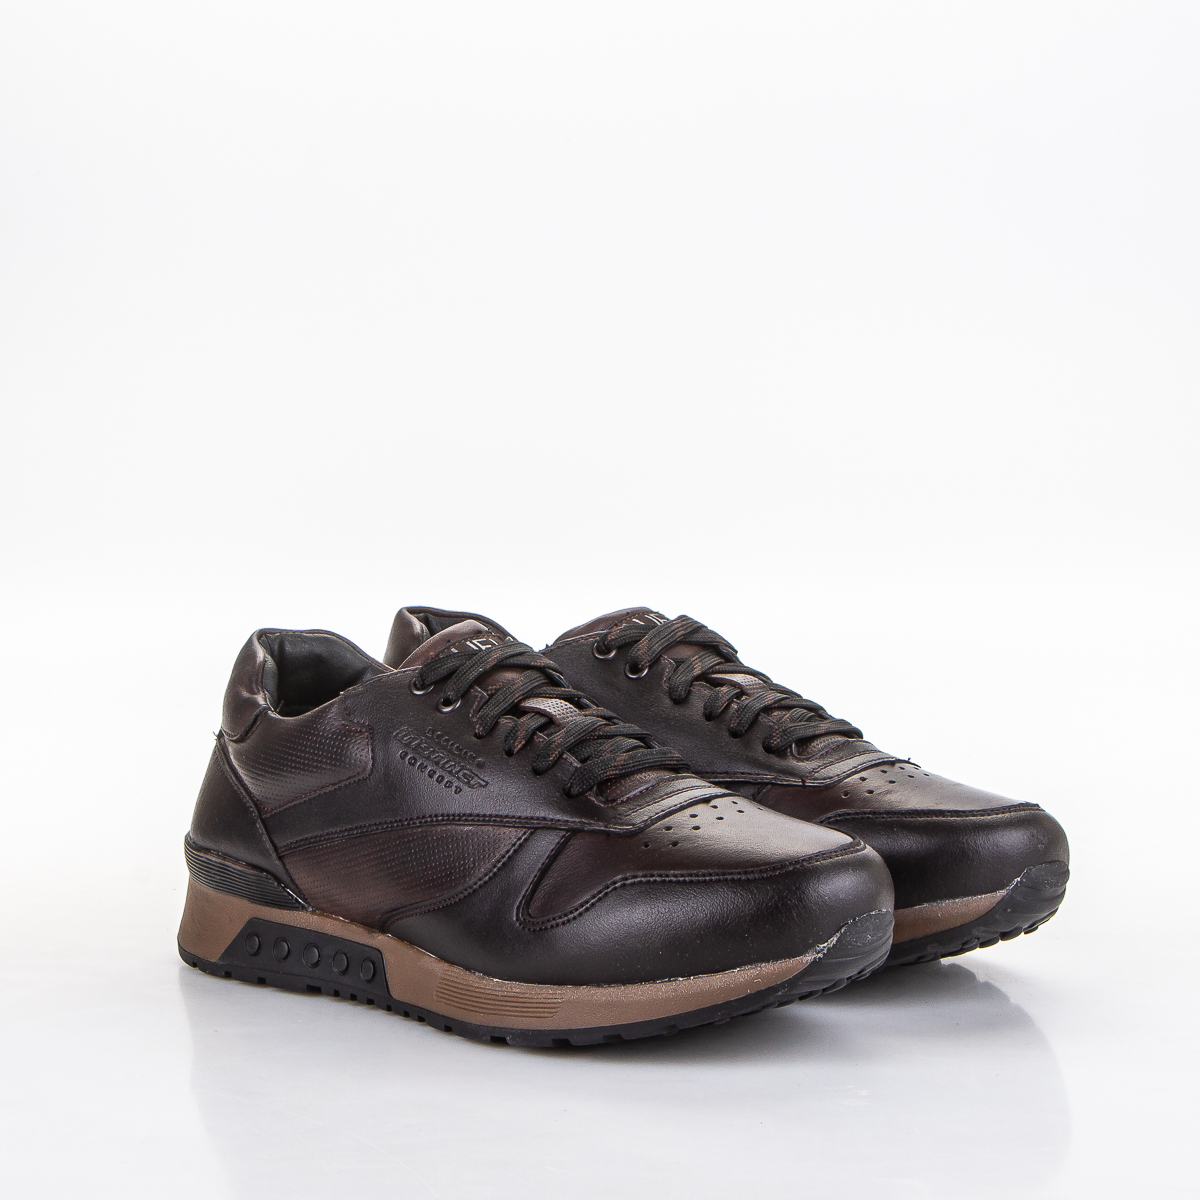 Фото Кроссовки мужские 44-77 brown купить на lauf.shoes